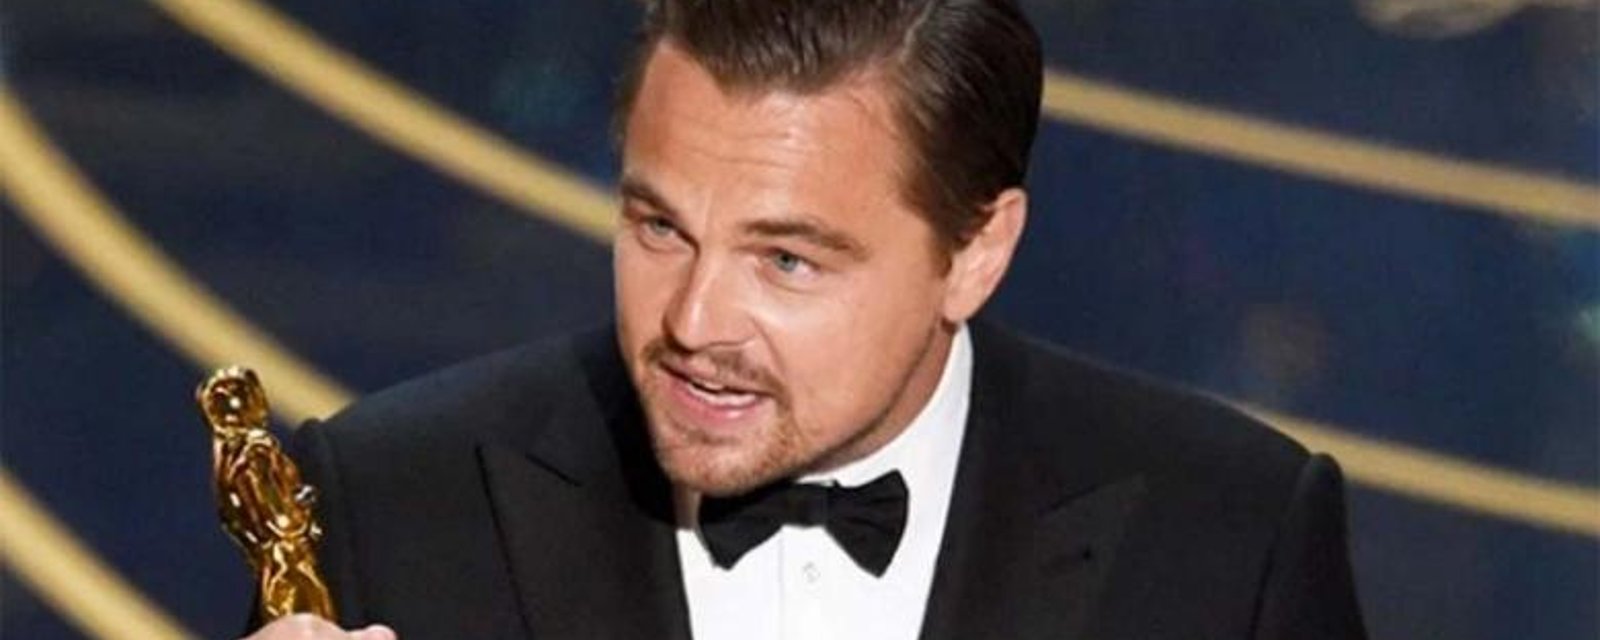 La photo qui fait scandale... Leonardo DiCaprio règle ses comptes!